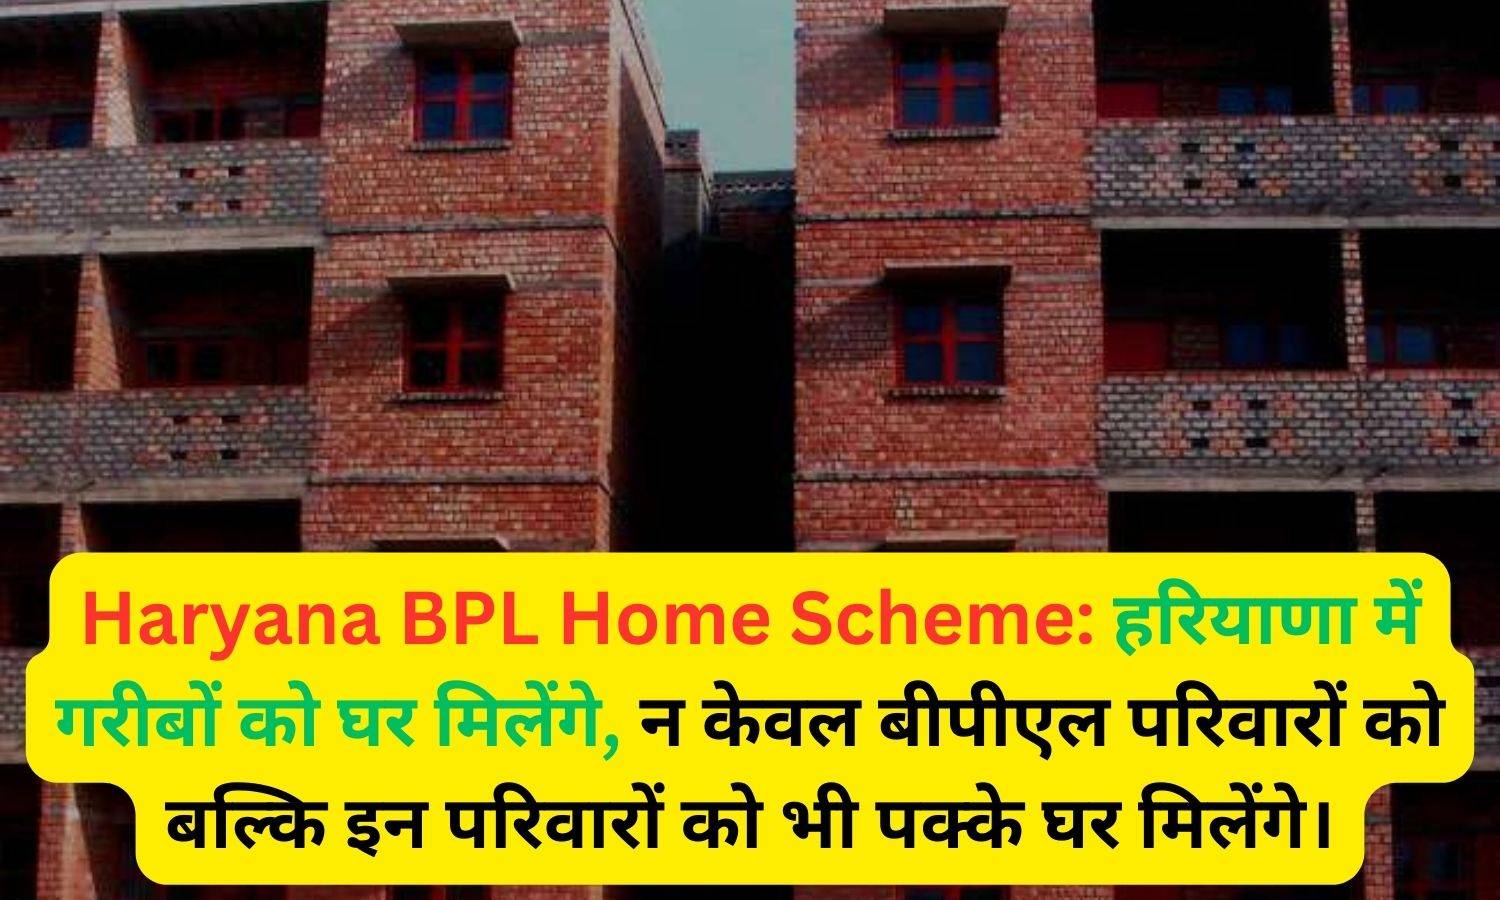 Haryana BPL Home Scheme: हरियाणा में गरीबों को घर मिलेंगे, न केवल बीपीएल परिवारों को बल्कि इन परिवारों को भी पक्के घर मिलेंगे